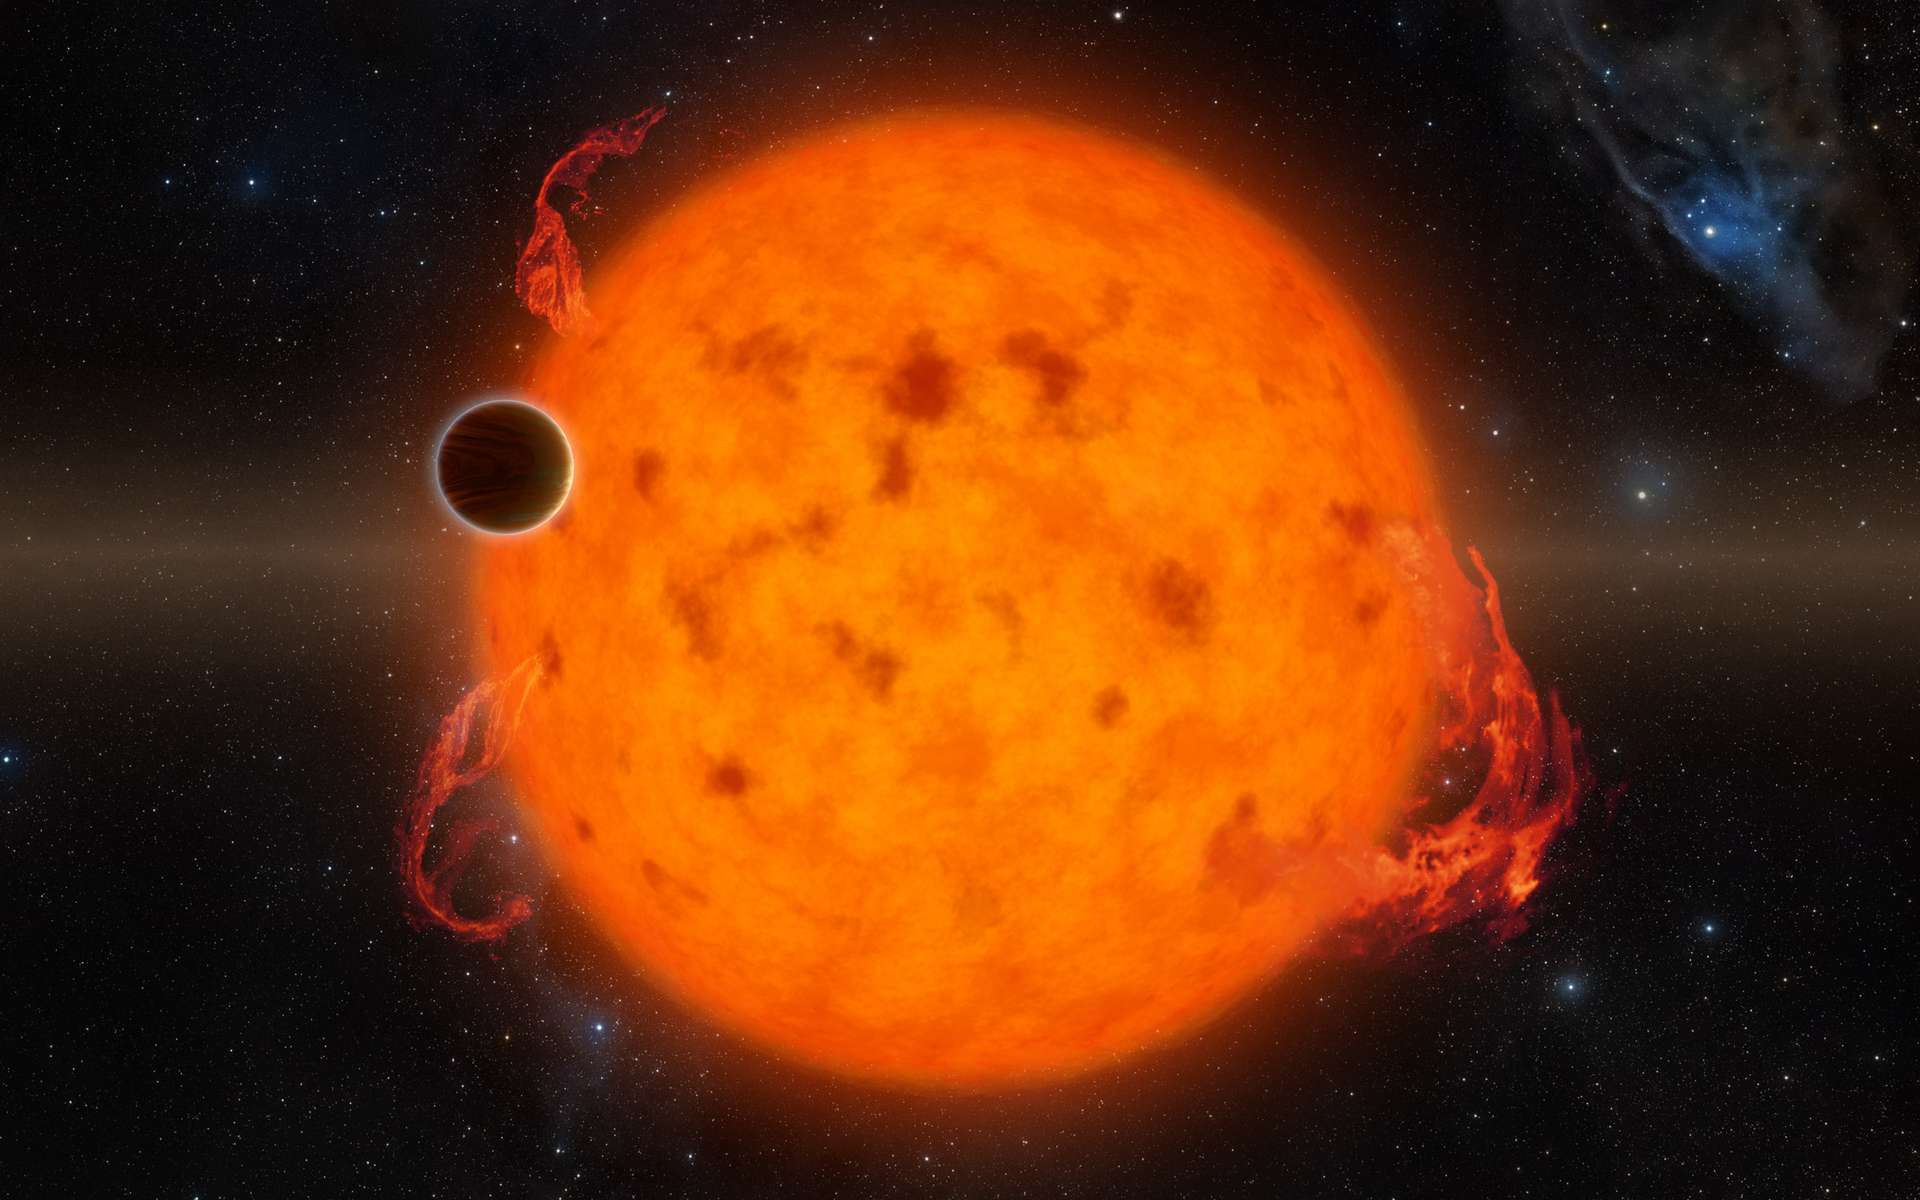 Vue d'artiste d'une exoplanète orbitant proche de son étoile. © Nasa / JPL-Caltech